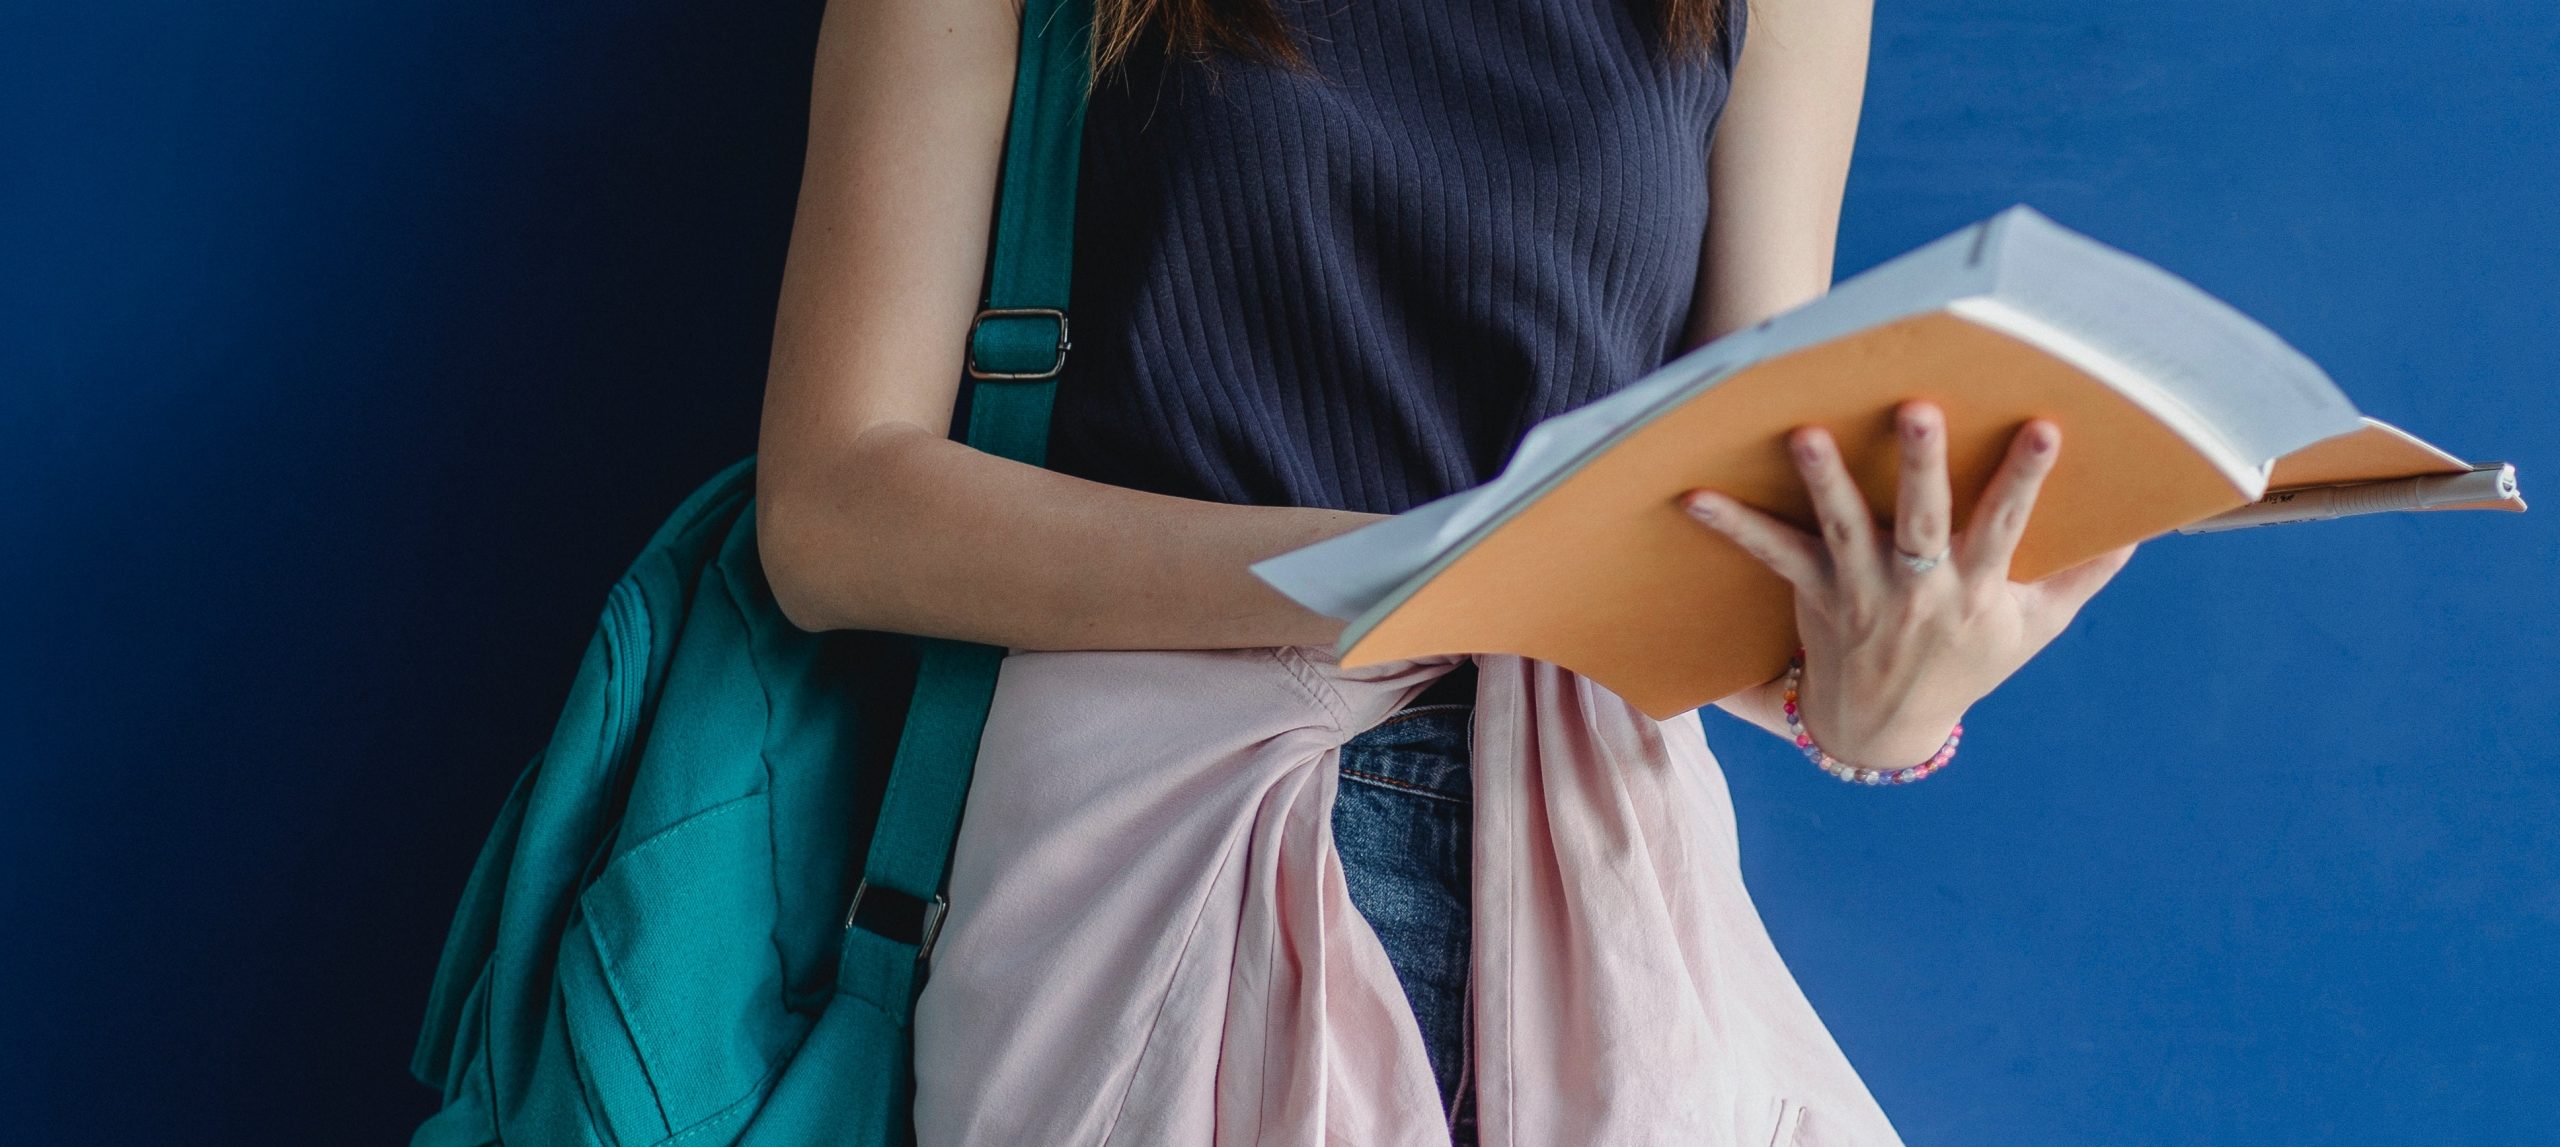 Mujer sosteniendo libro con mochila en hombro